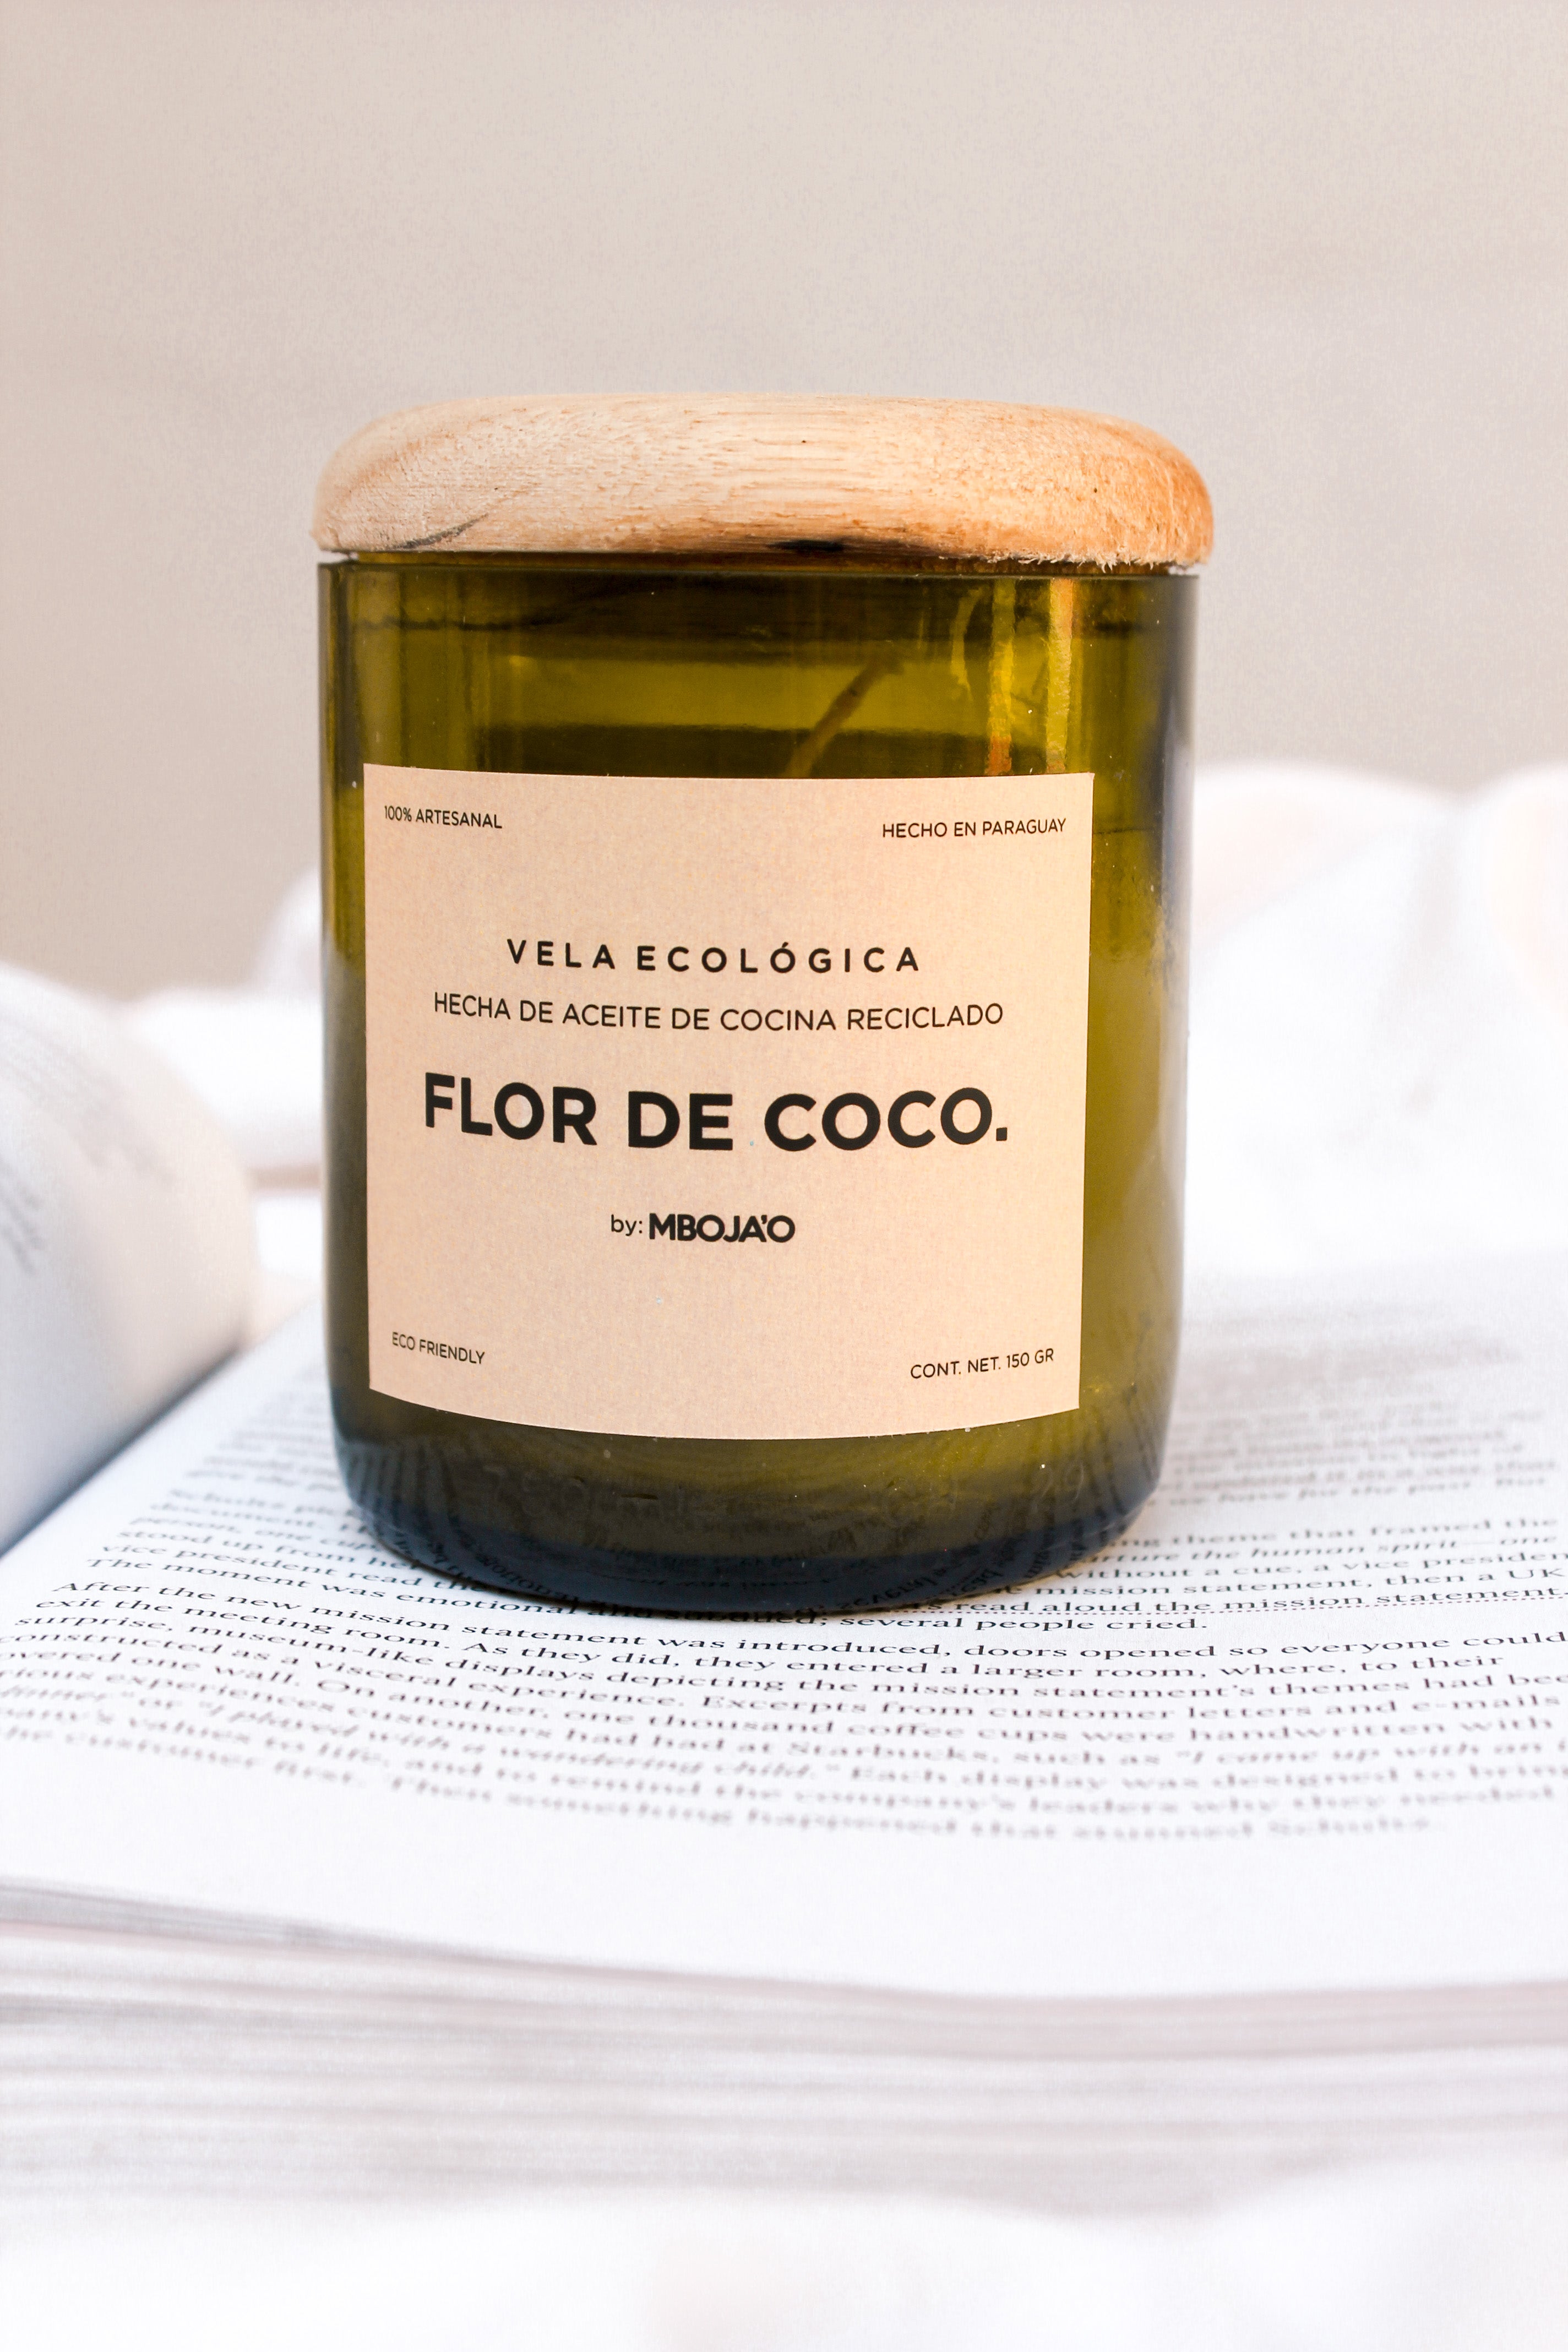 Velas ecológicas de aceite de cocina reciclado contenidas en botellas de vidrio recicladas - Aroma a Flor de Coco